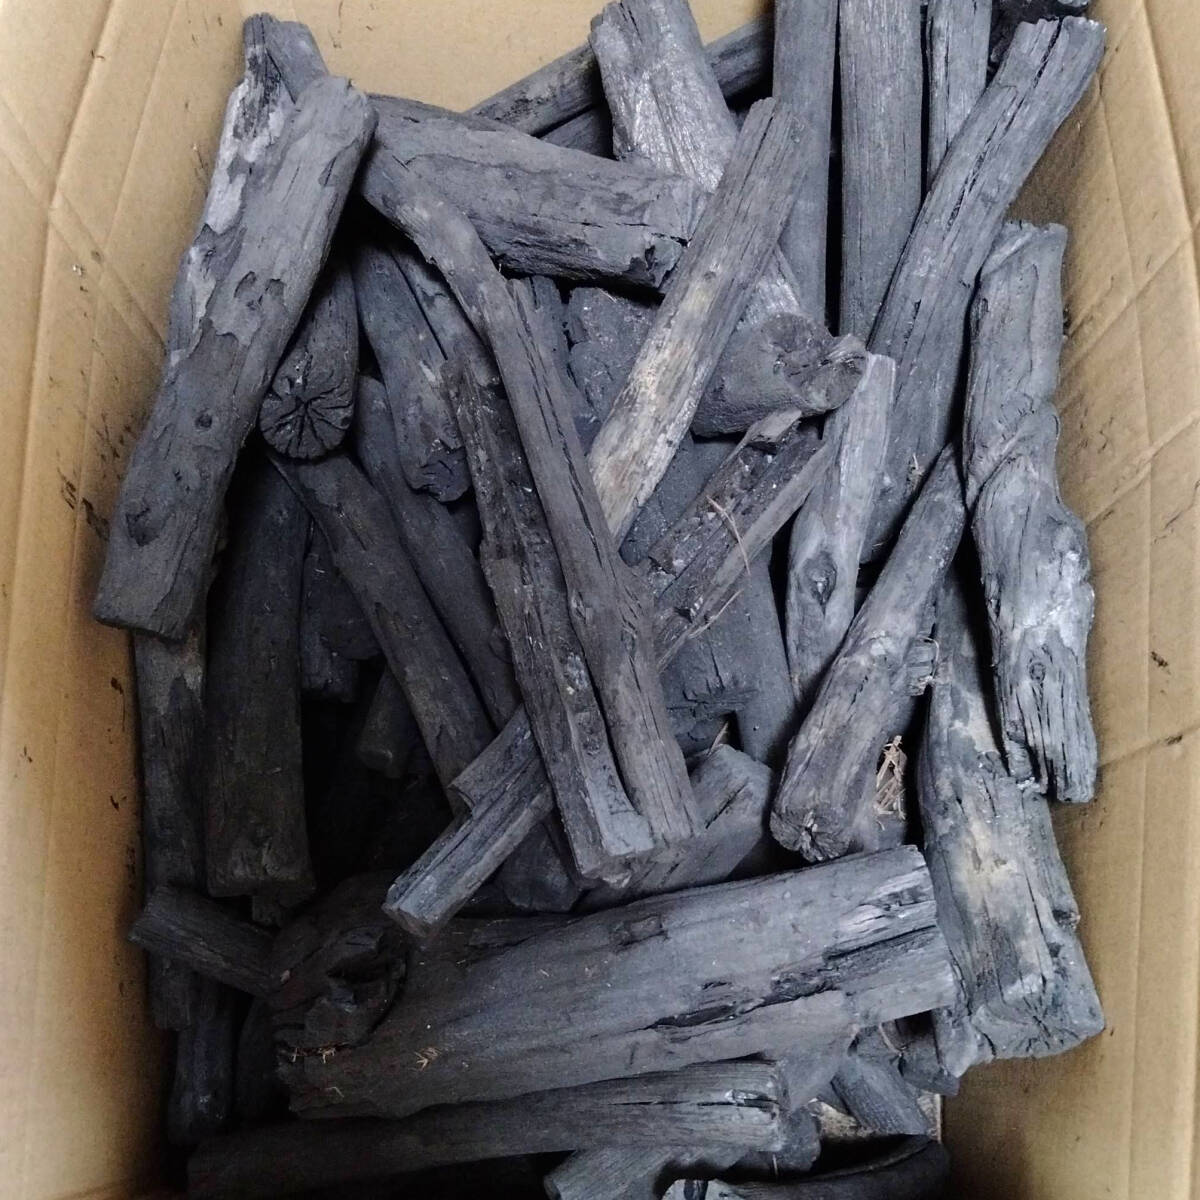  binchotan charcoal large amount set weight approximately 15kg